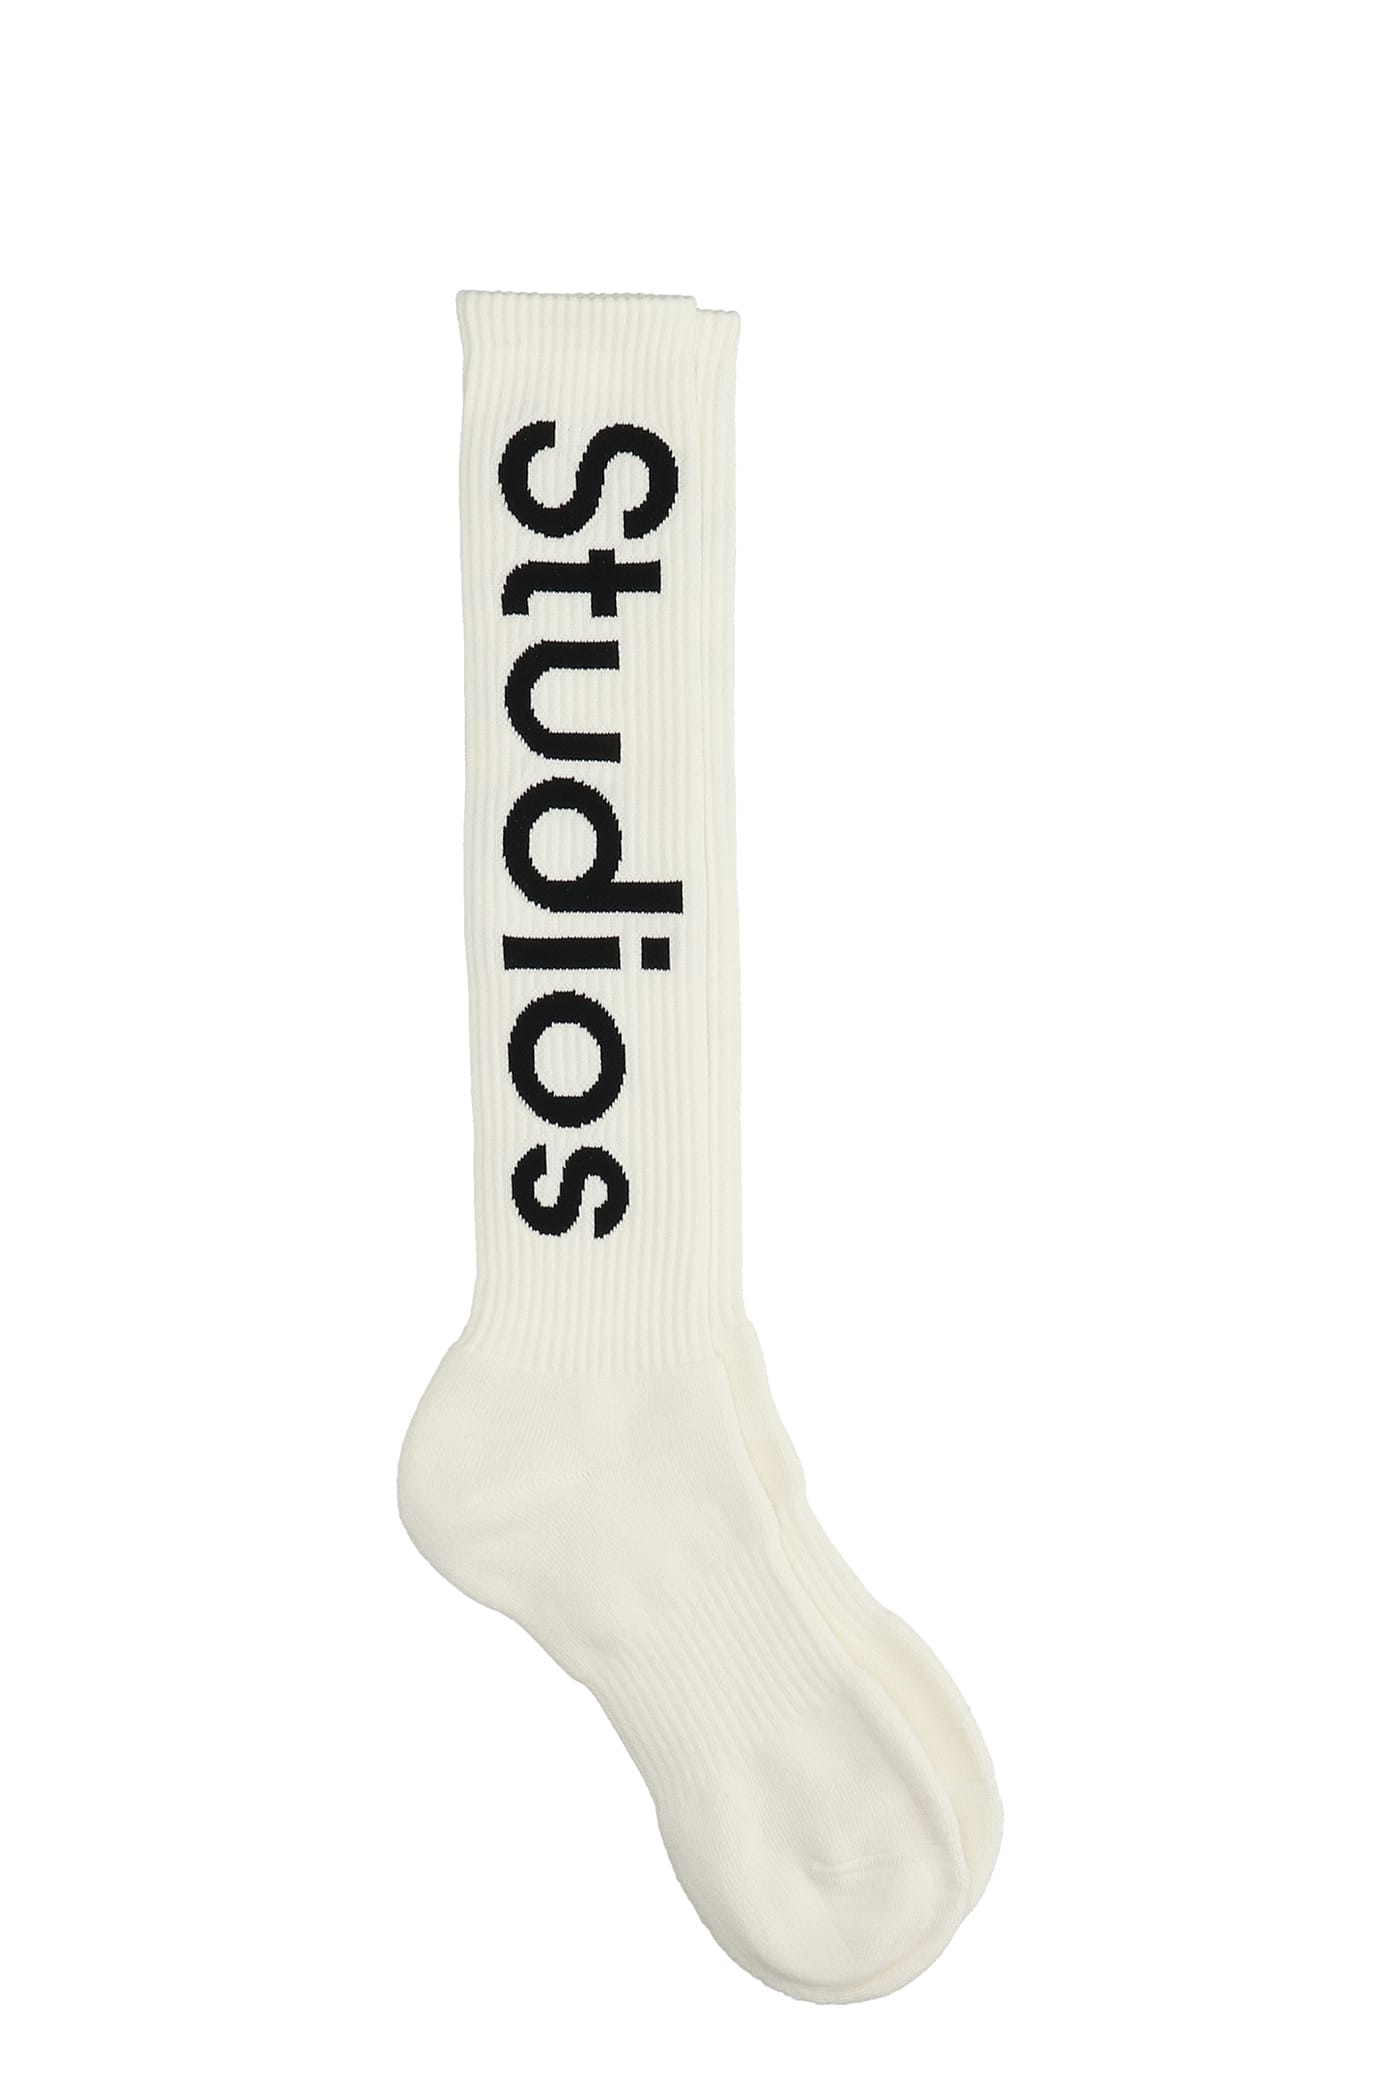 Acne Studios Socks In White Cotton